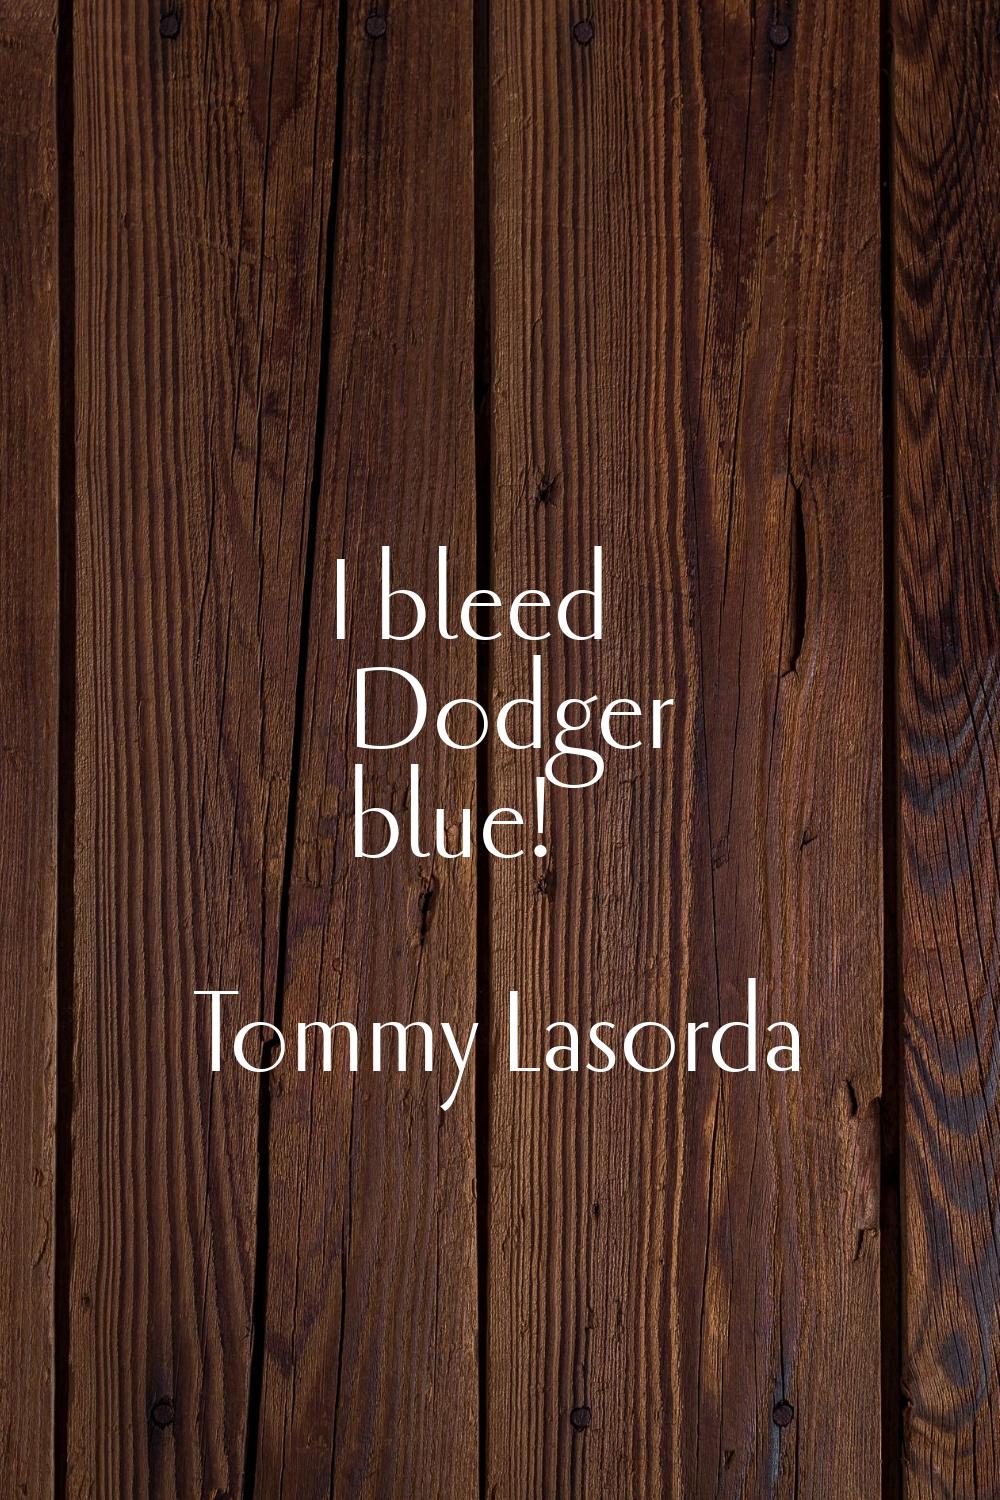 I bleed Dodger blue!